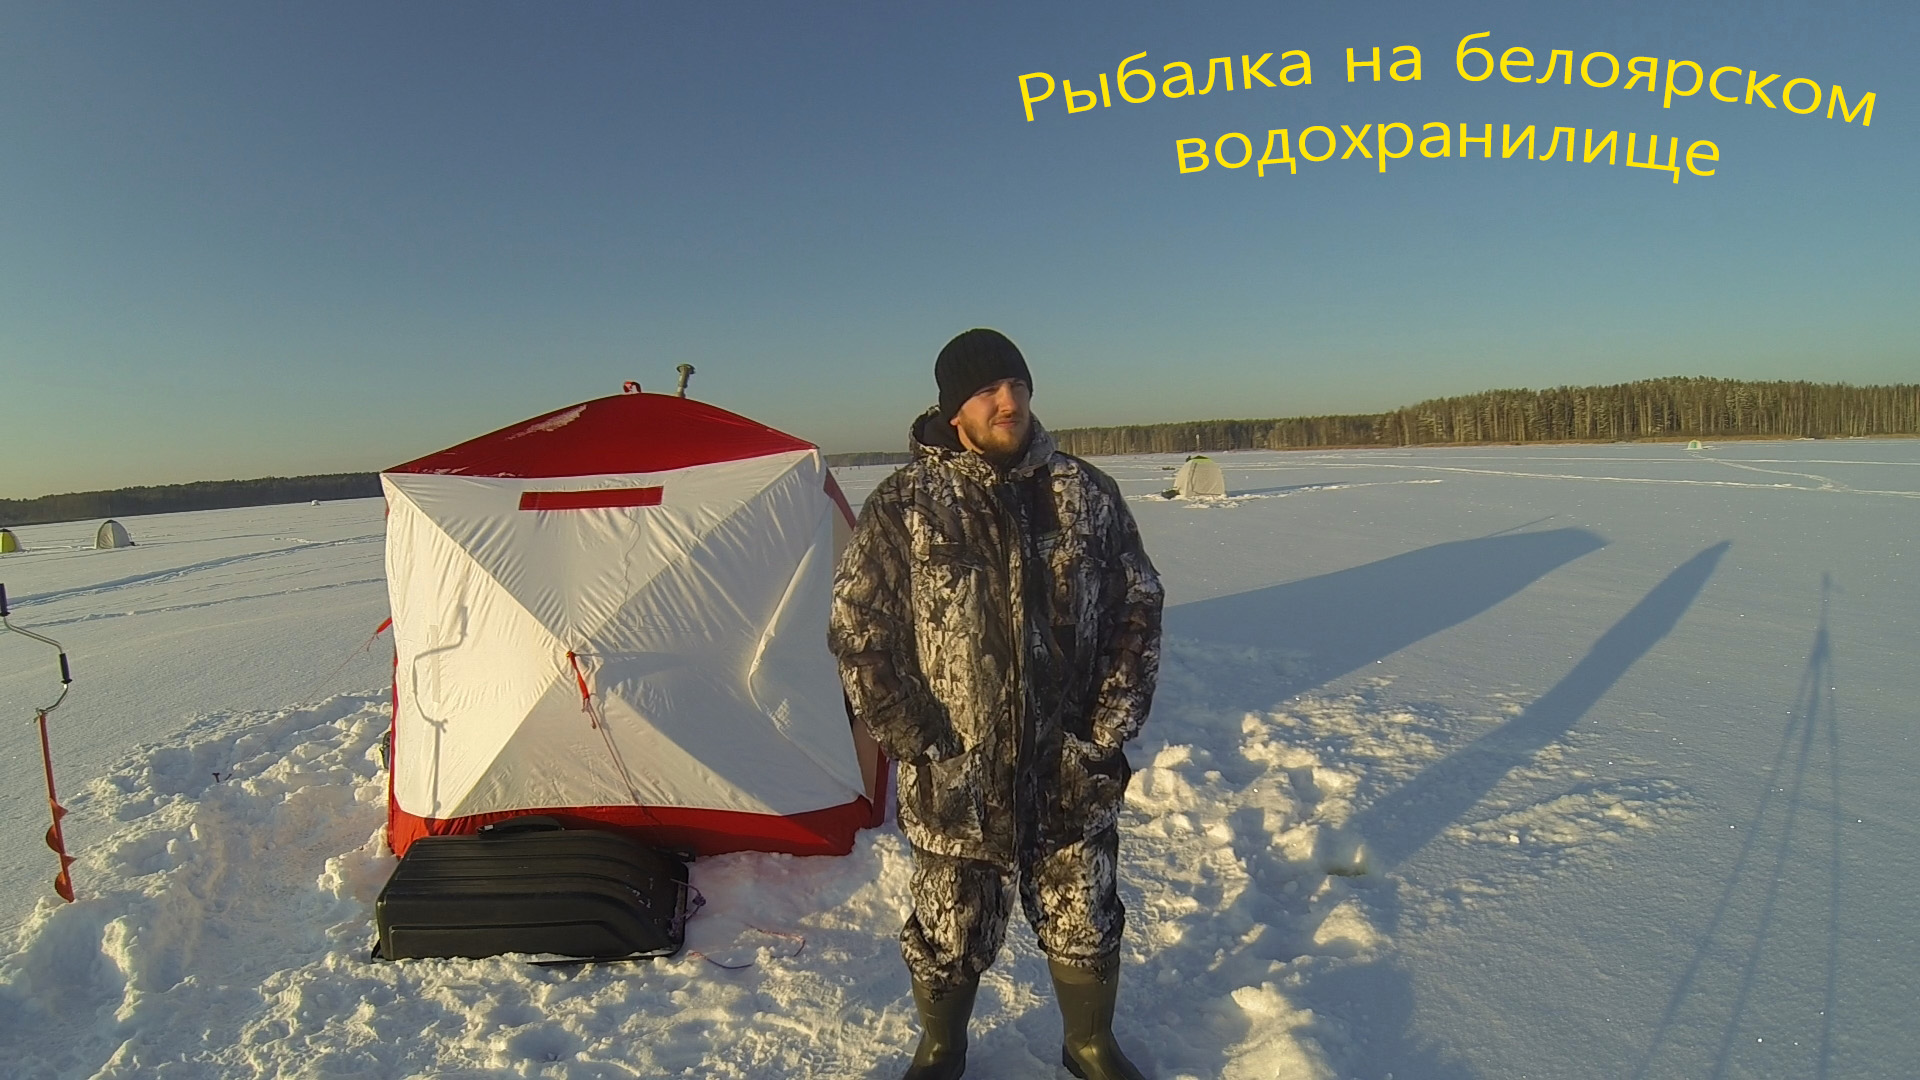 Рыбалка на белоярском водохранилище в контакте. Зимняя рыбалка на Белоярке. Рыбалка на Белоярке зимой. Палатка для зимней рыбалки медведь куб 4. Белоярка рыбалка 2022.